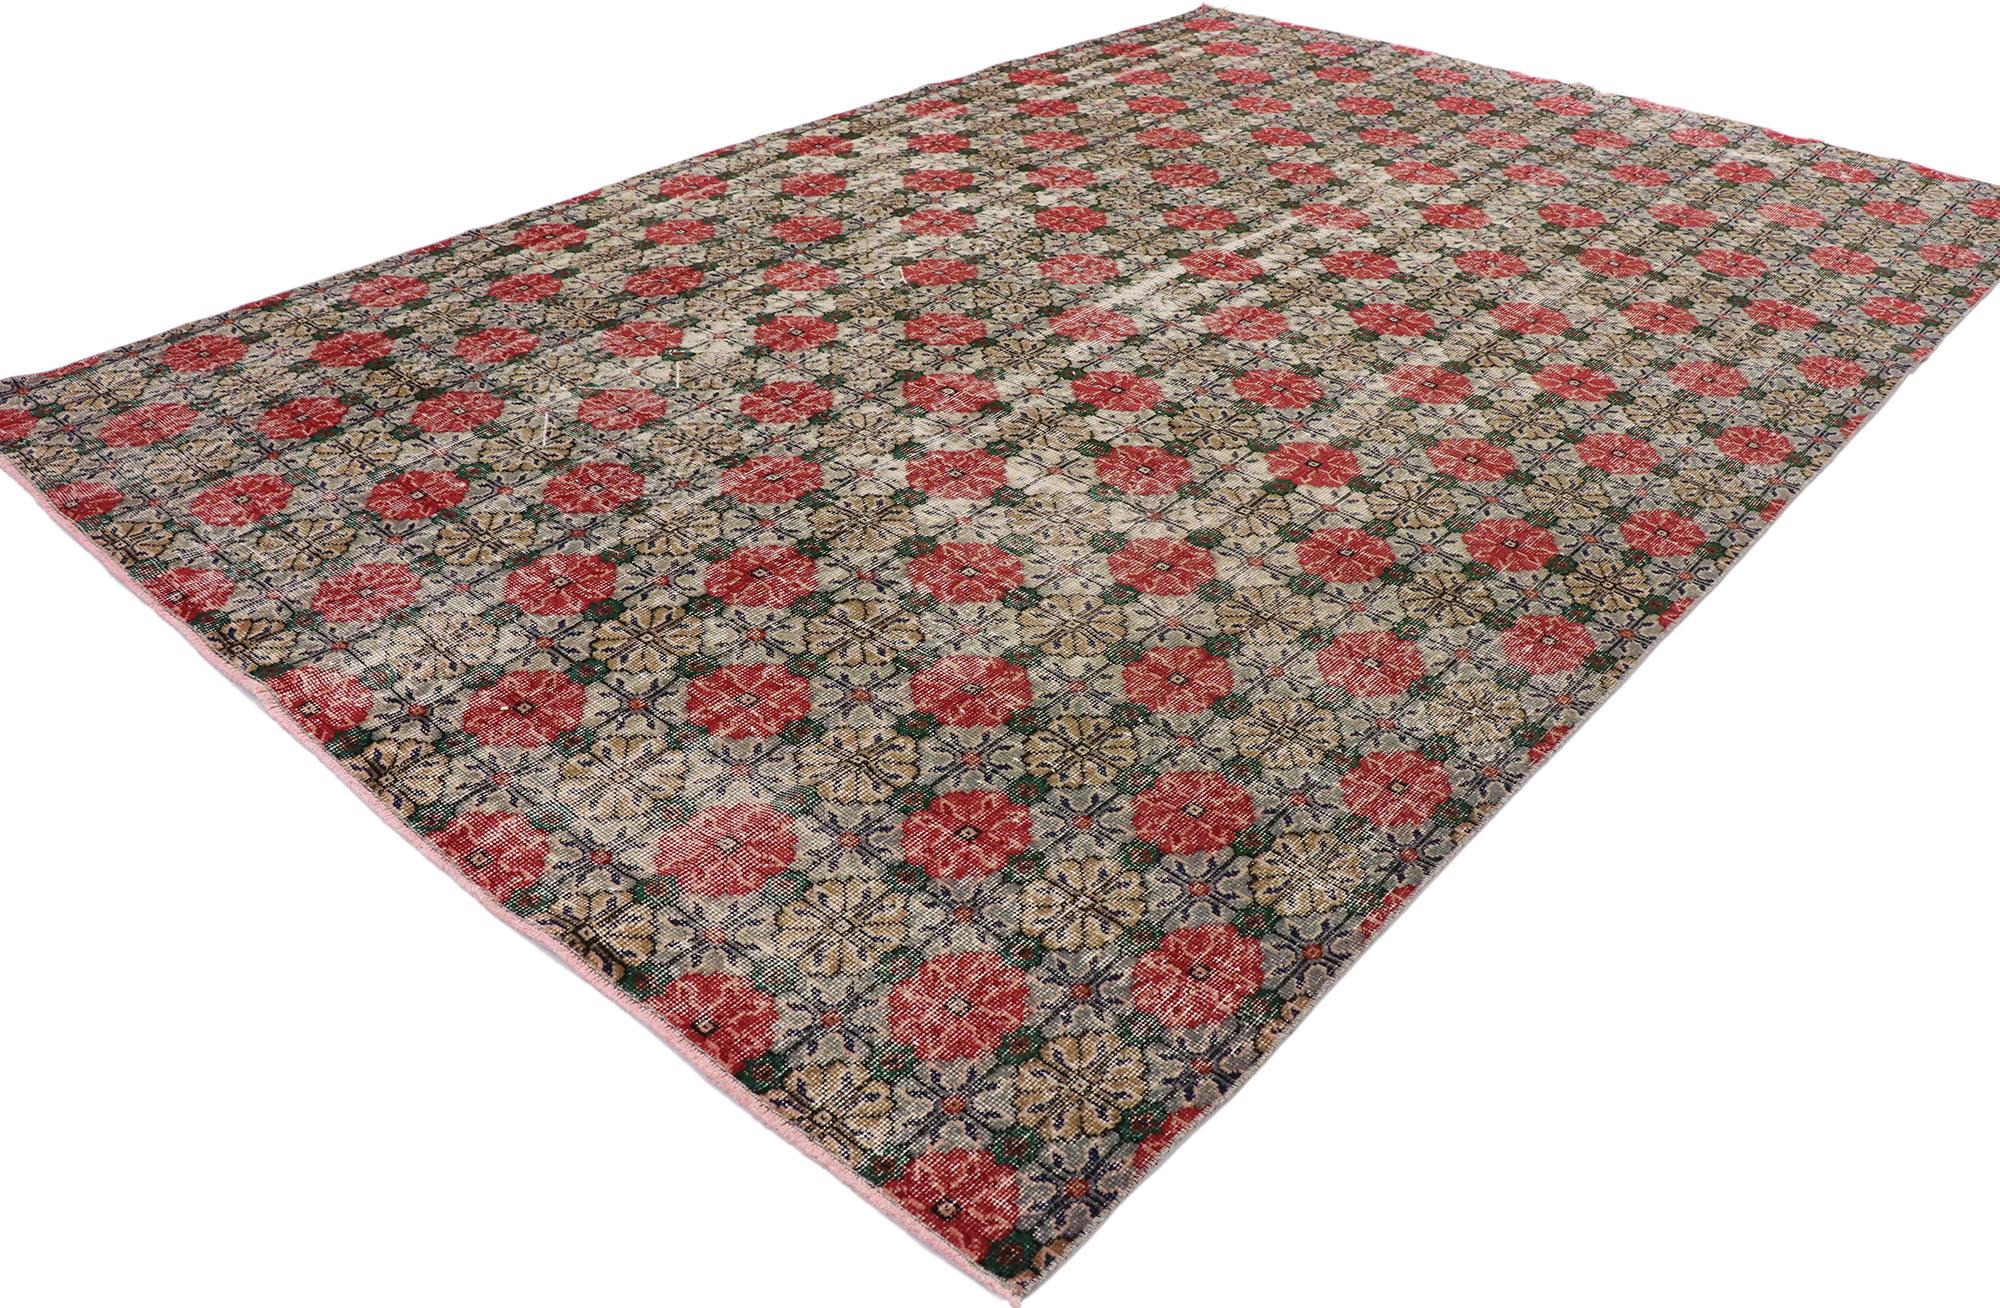 53365 Türkischer Sivas-Teppich im Vintage-Stil, 06'11 x 10'06.  
Dieser handgeknüpfte türkische Sivas-Teppich aus Wolle zeigt ein romantisches, florales Allover-Muster, das aus versetzten Reihen von offenen Blüten besteht. Sanfte Wellen von Abrieb